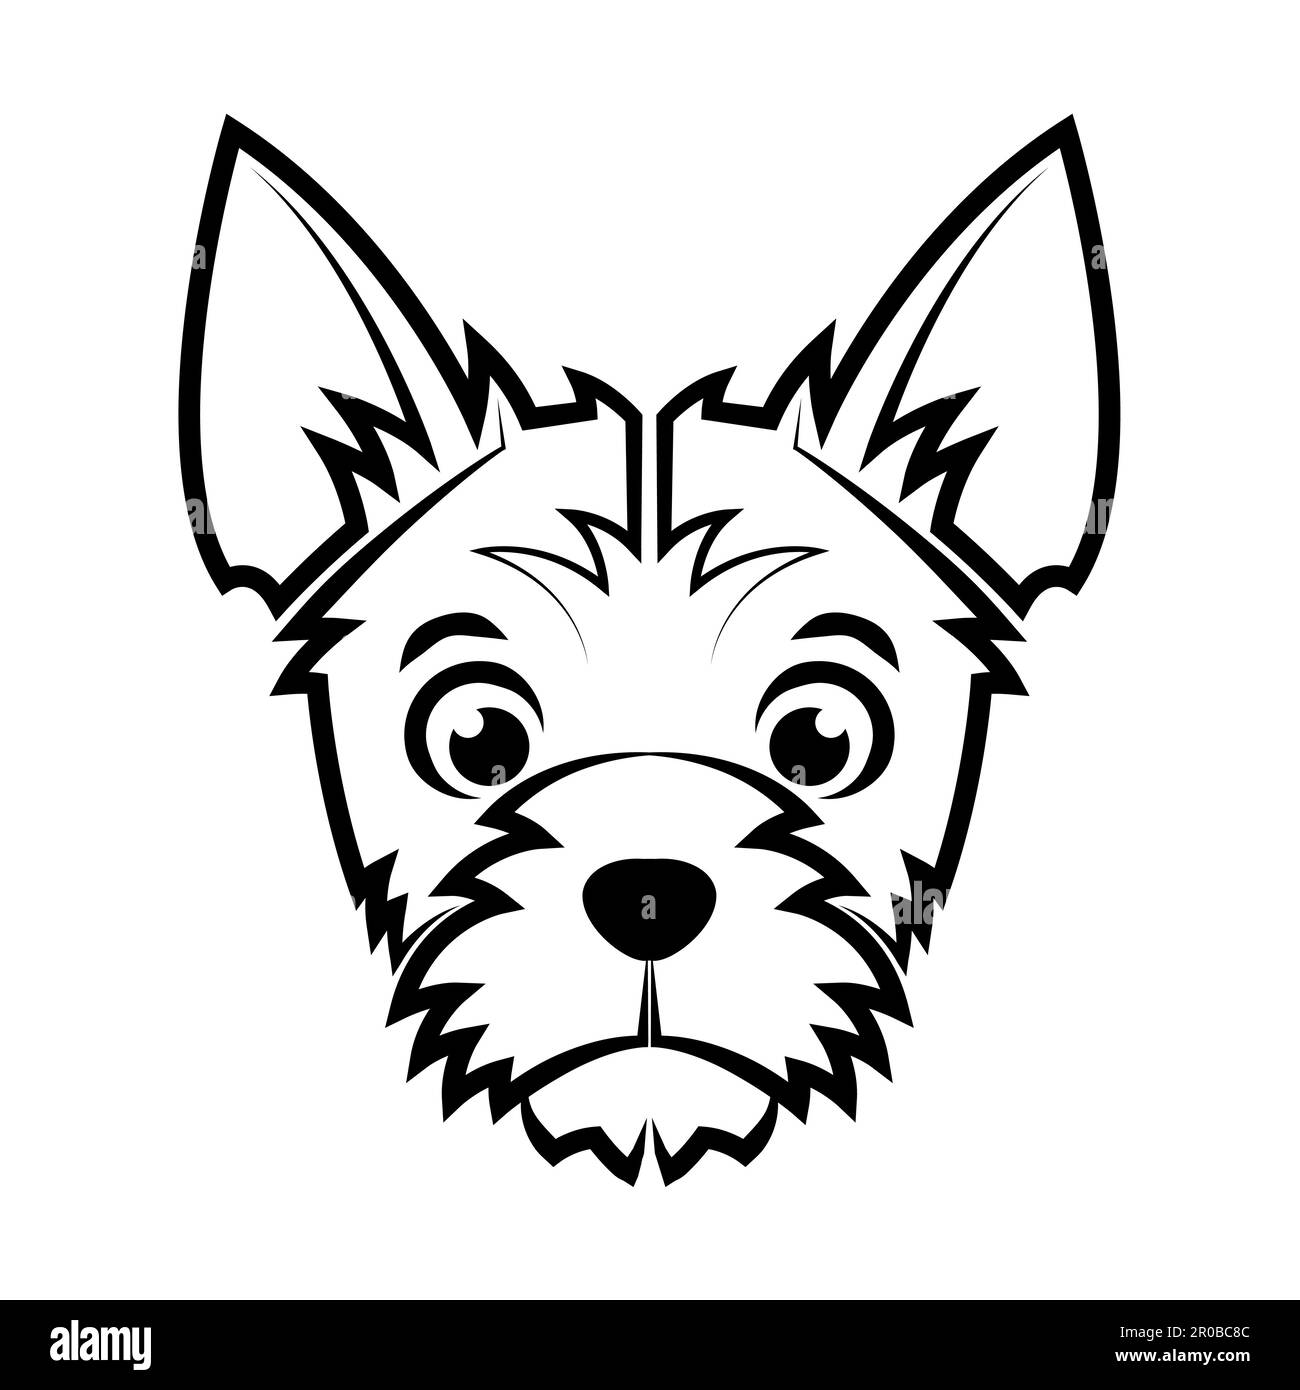 Noir et blanc ligne art de la tête de chien terrier bonne utilisation pour symbole mascotte icône avatar tatouage T logo de chemise ou n'importe quel design Illustration de Vecteur